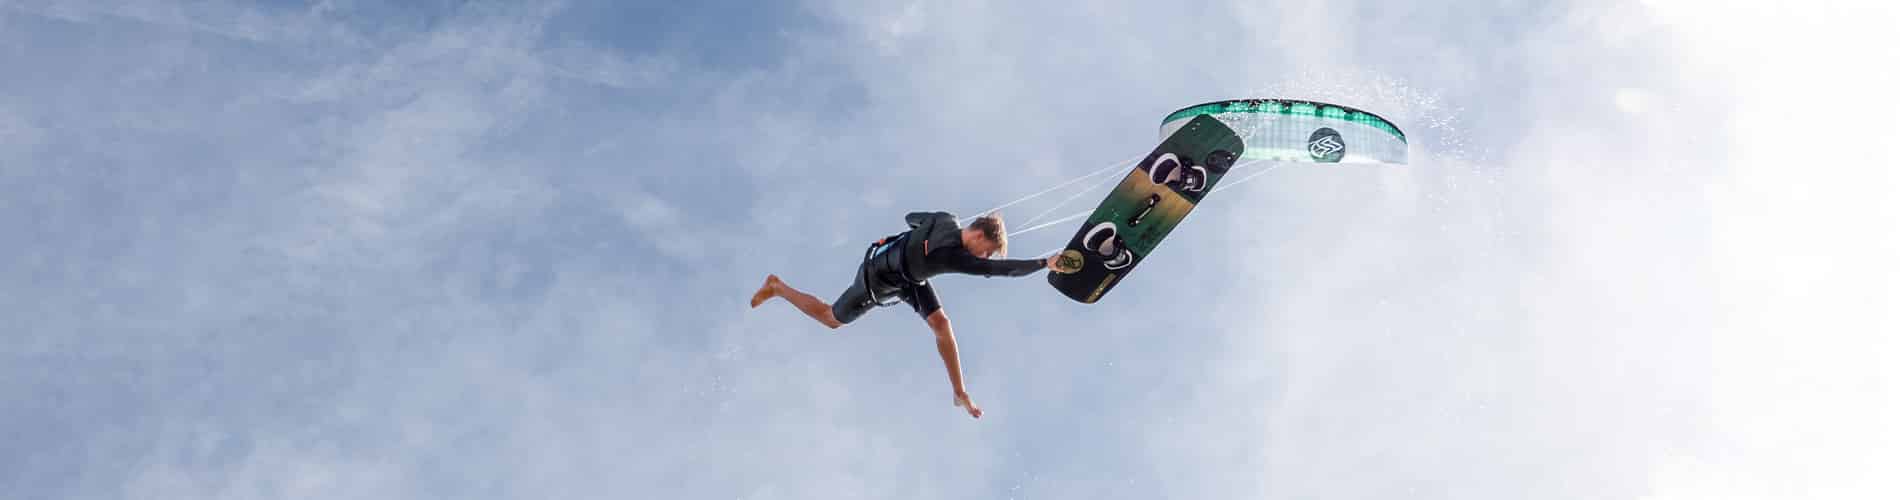 Flysurfer Radical 6 kiteboard